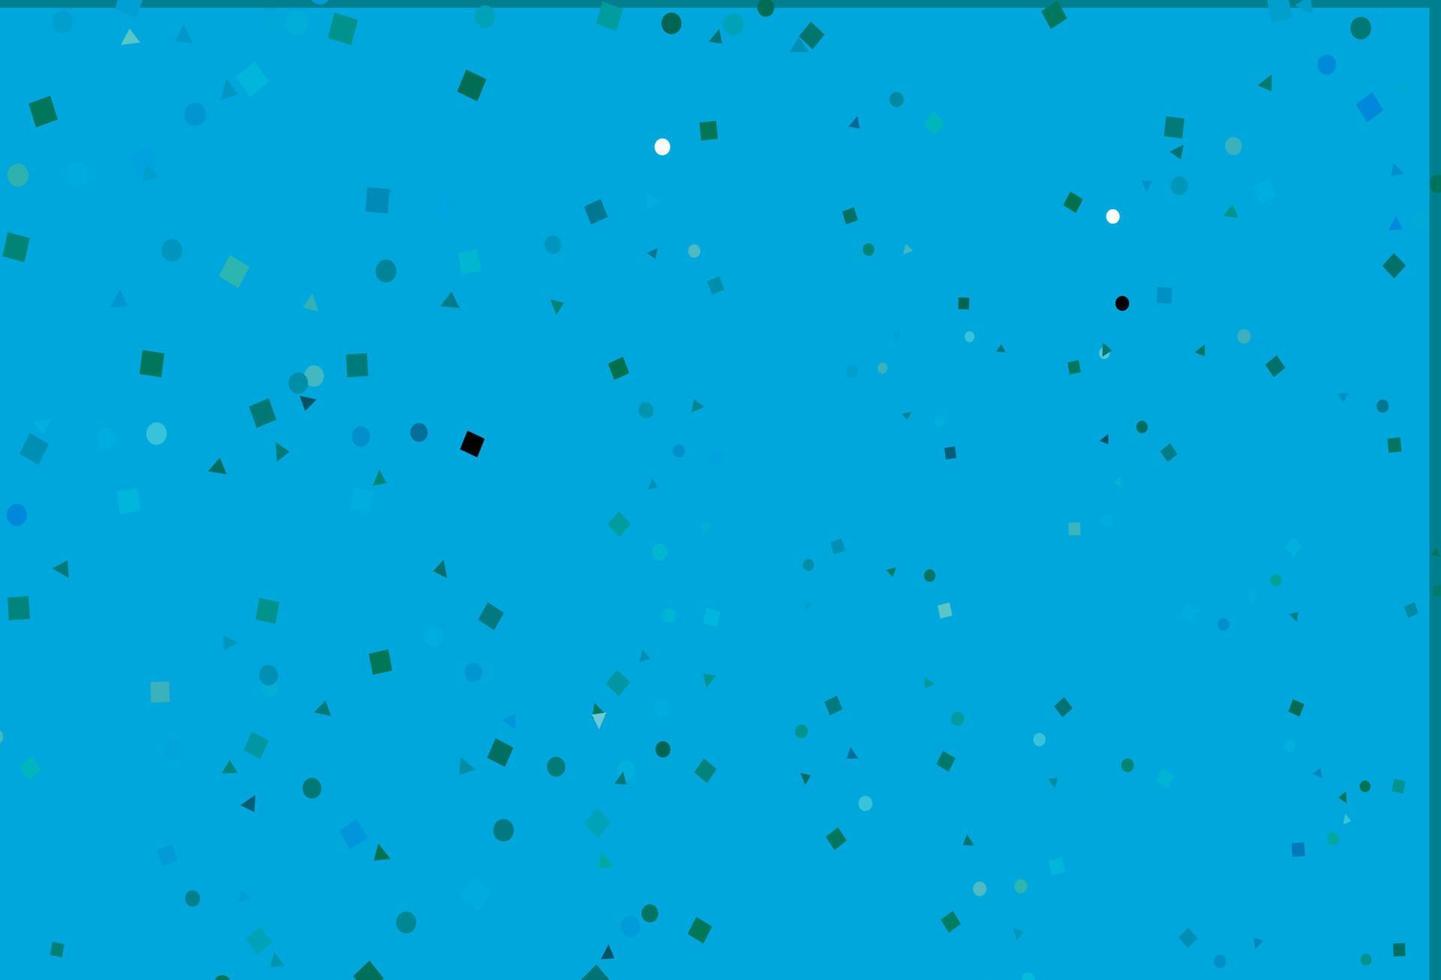 plantilla de vector azul claro, verde con cristales, círculos, cuadrados.